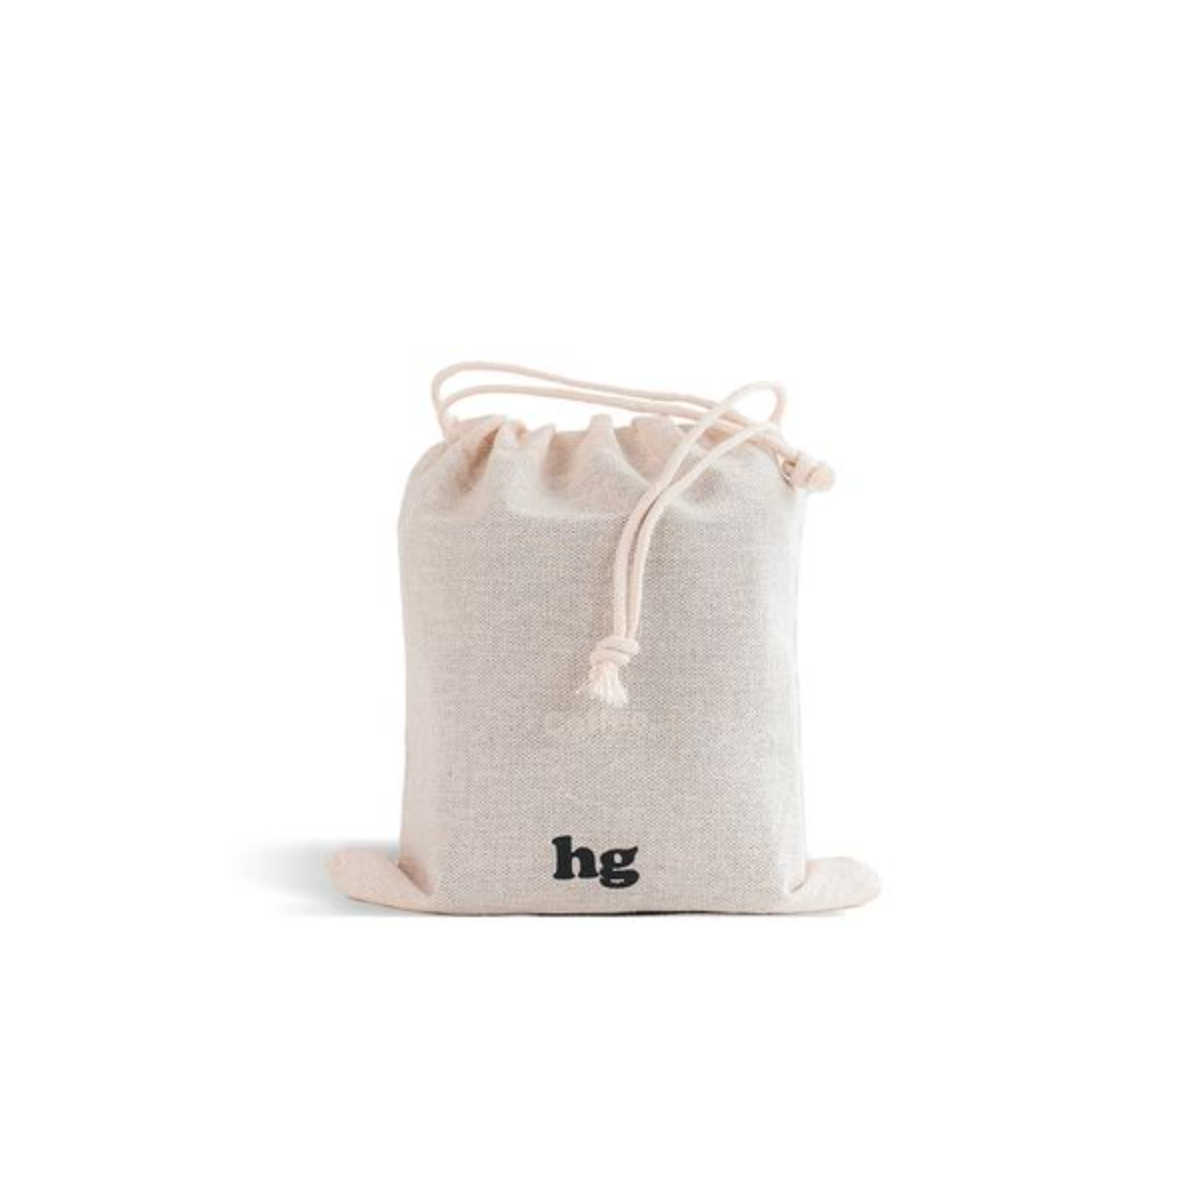 HG Drawstring bag - medium